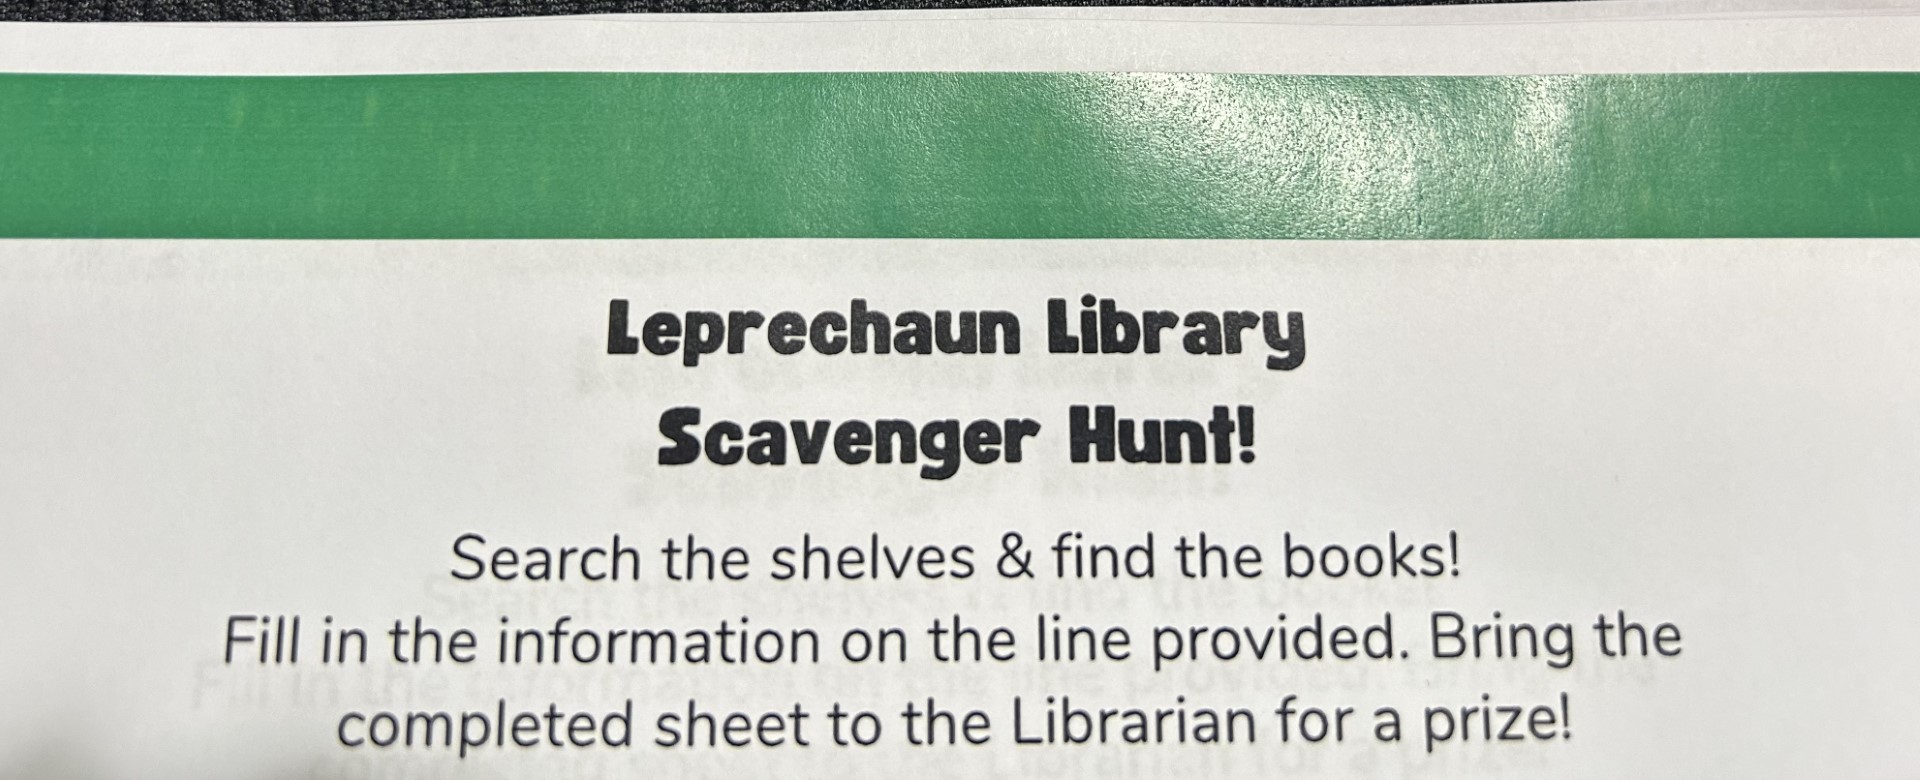 Leprechaun Library Scavenger Hunt!